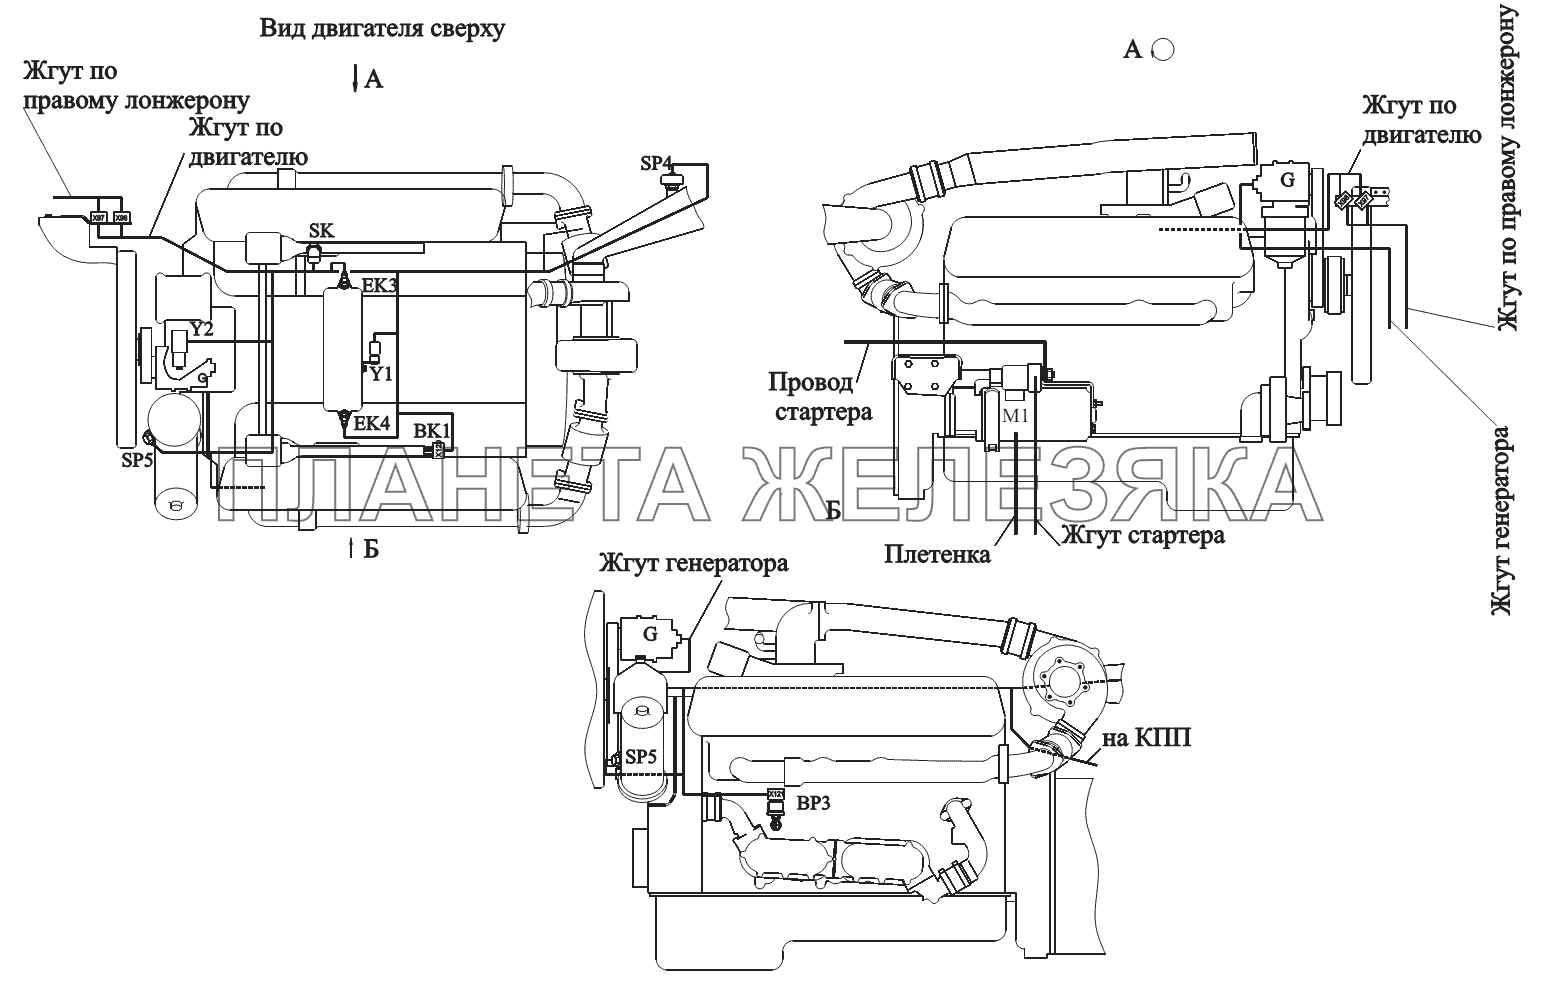 Расположение разъемов и элементов электрооборудования на двигателе ЯМЗ-238ДЕ2, ЯМЗ-7511 МАЗ-551605